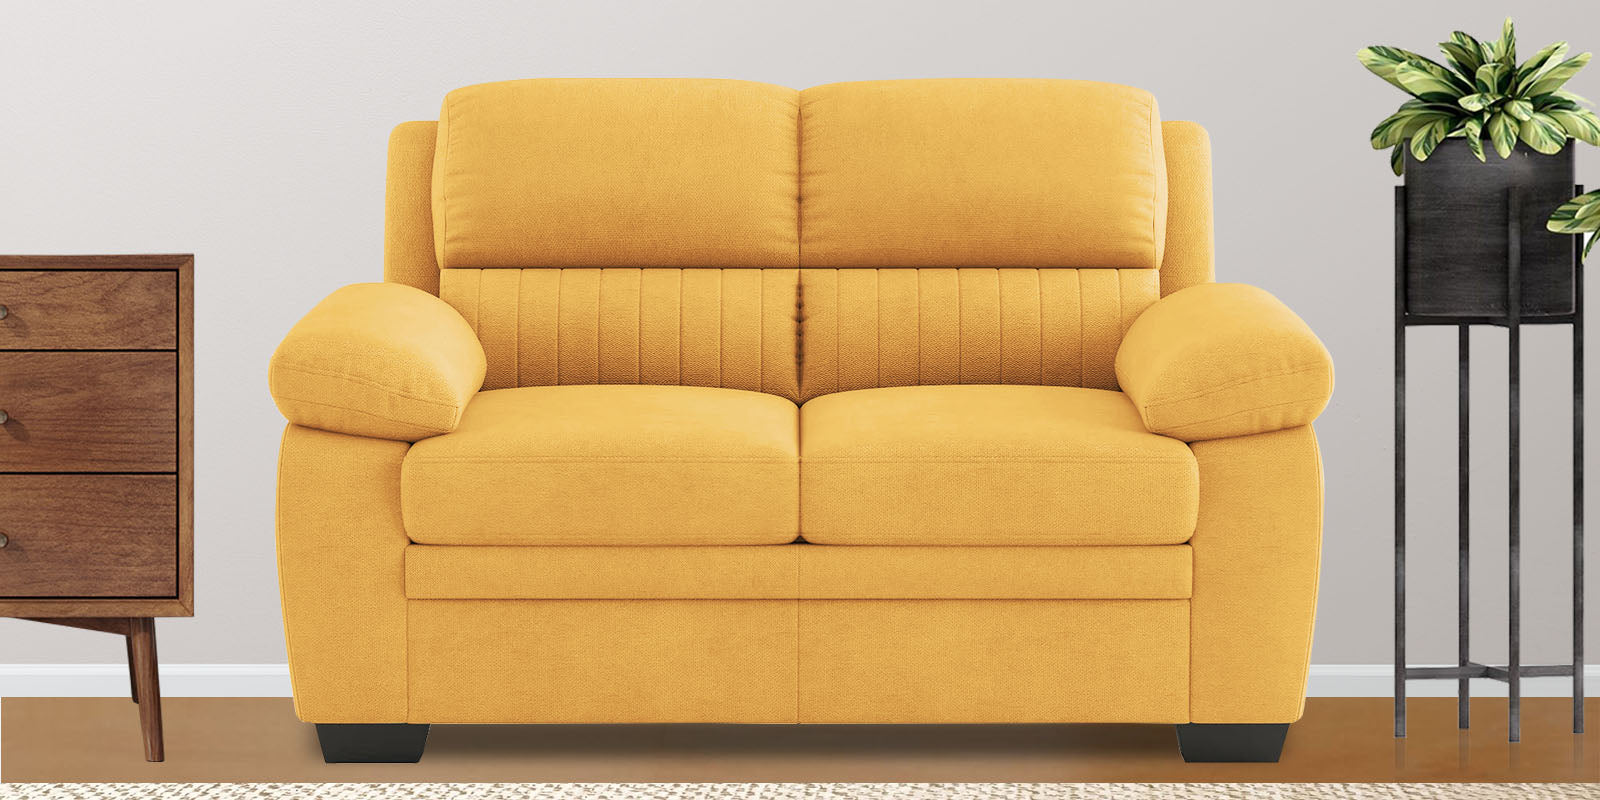 Kraze Velvet 2 Seater Sofa in Turmeric yellow Colour